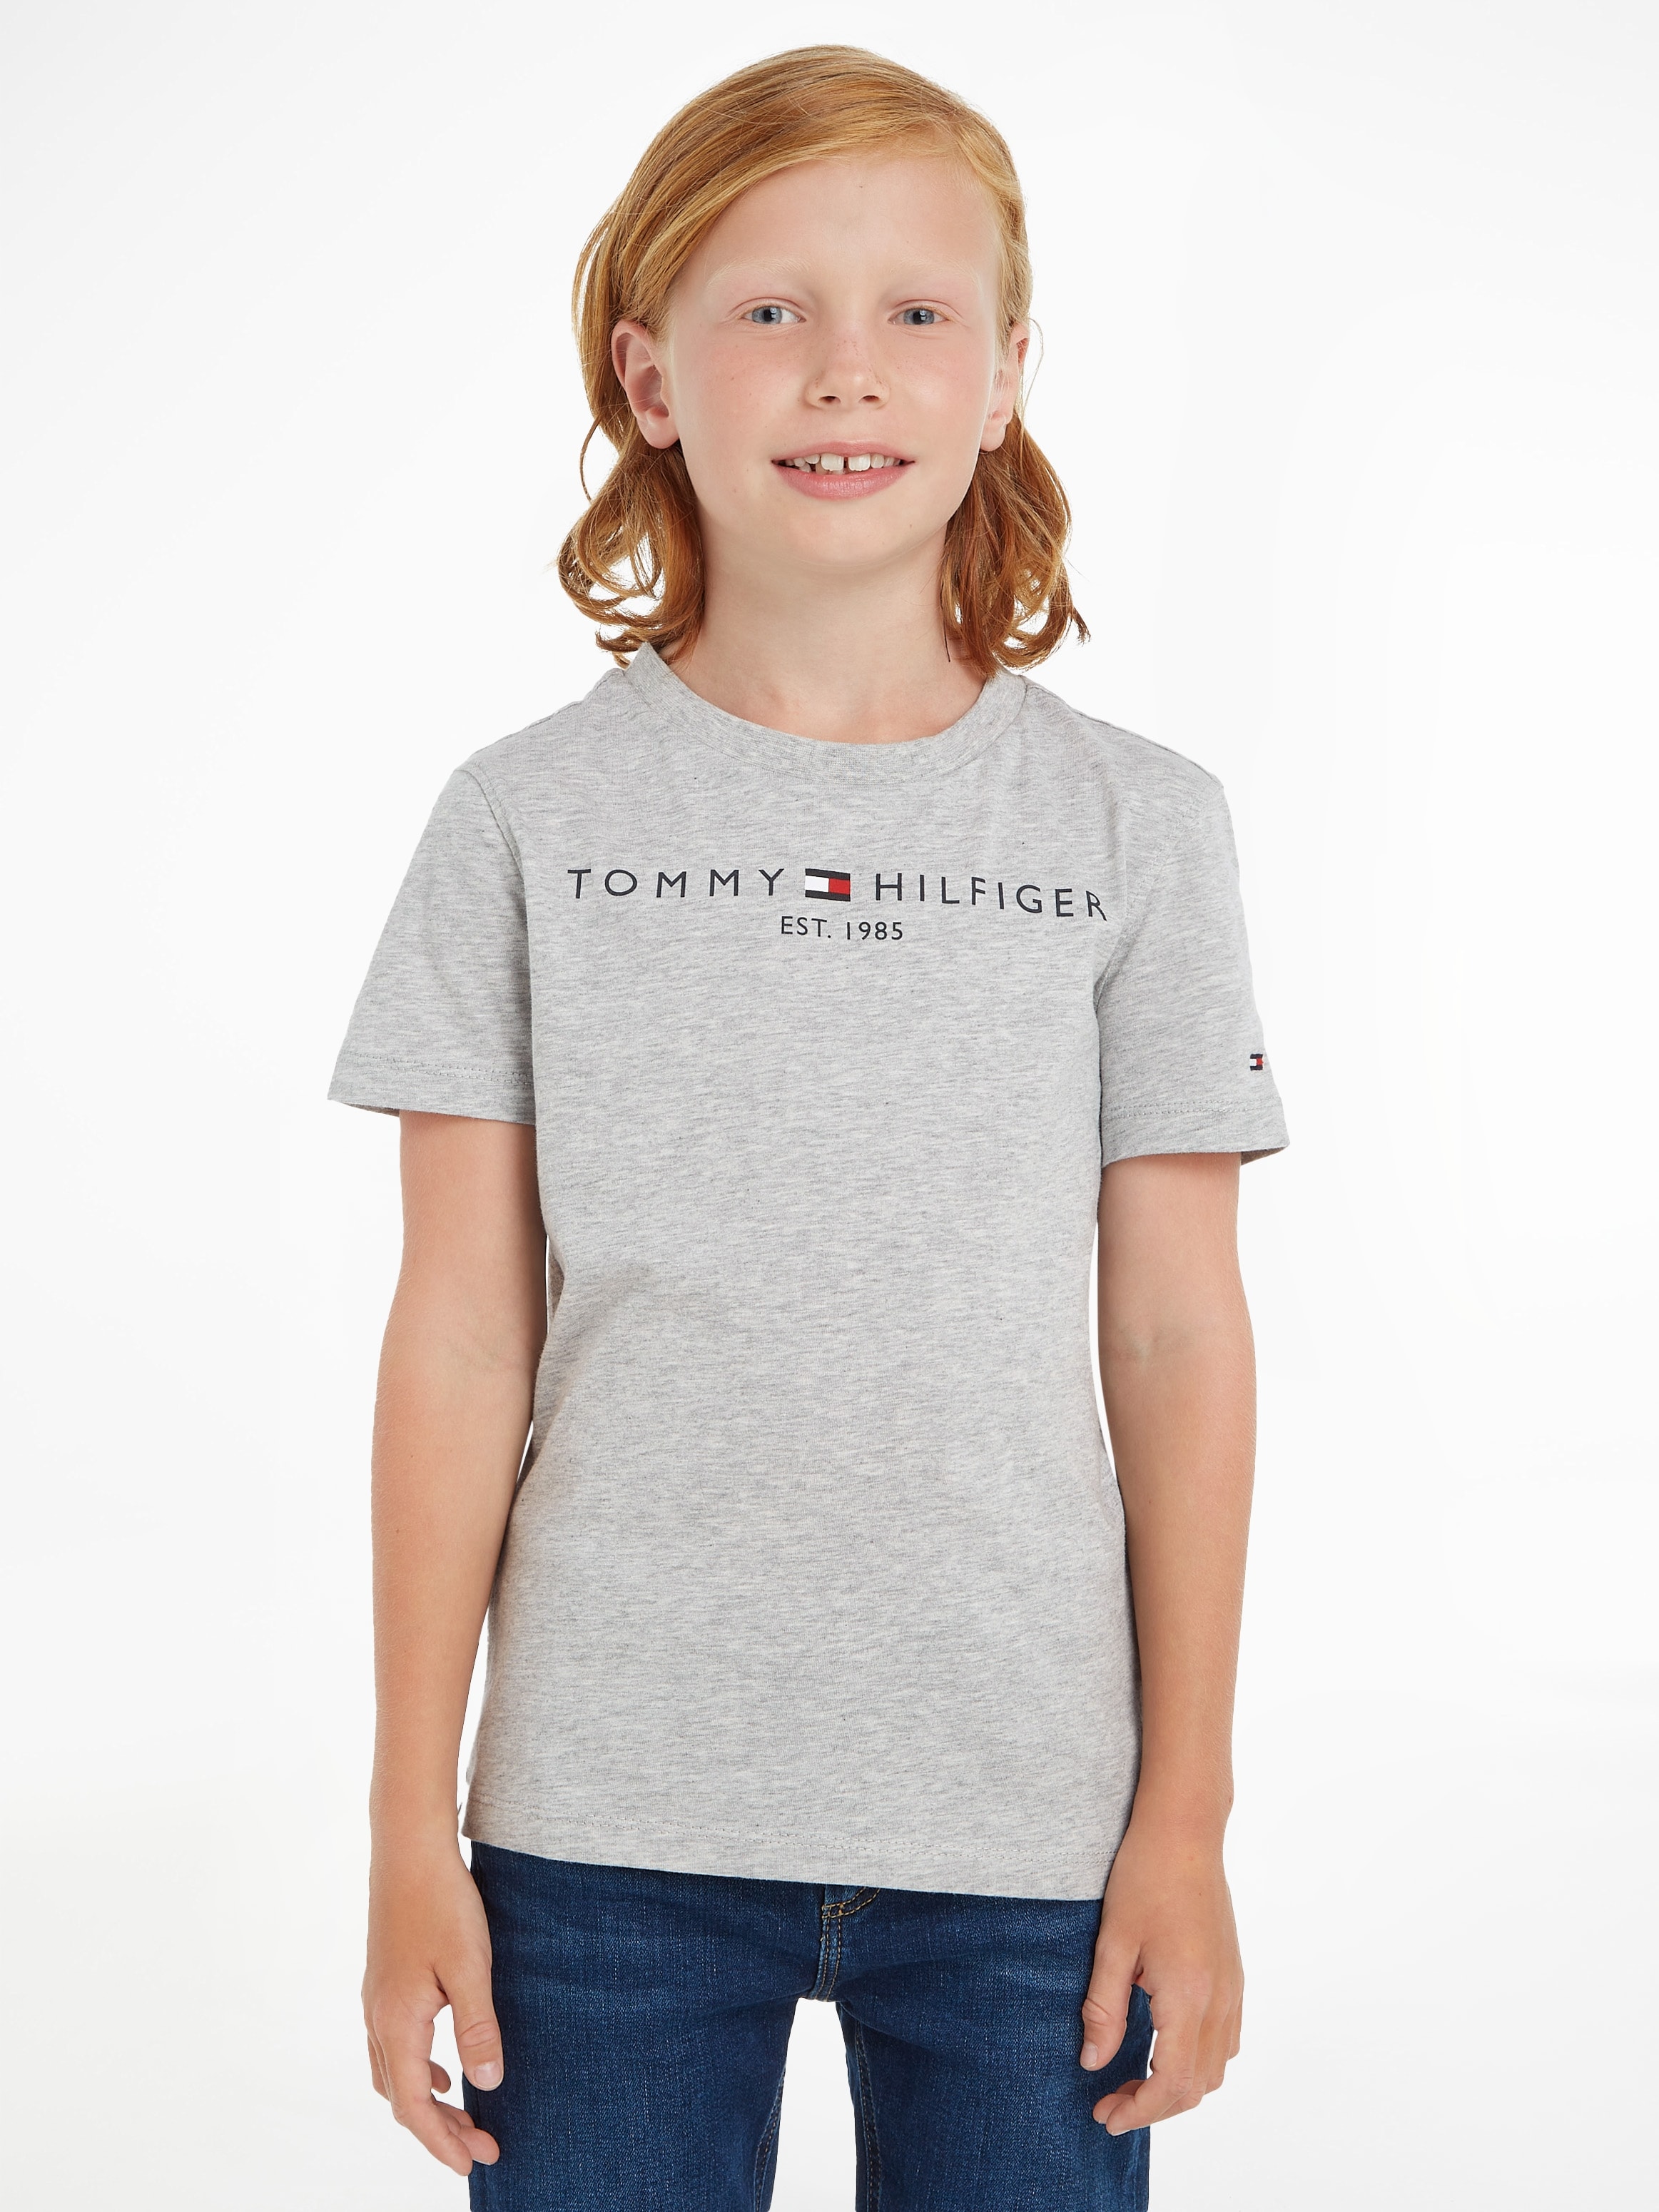 TEE«, Kids Mädchen und Hilfiger bestellen MiniMe,für Jungen Kinder Tommy »ESSENTIAL bei OTTO T-Shirt Junior